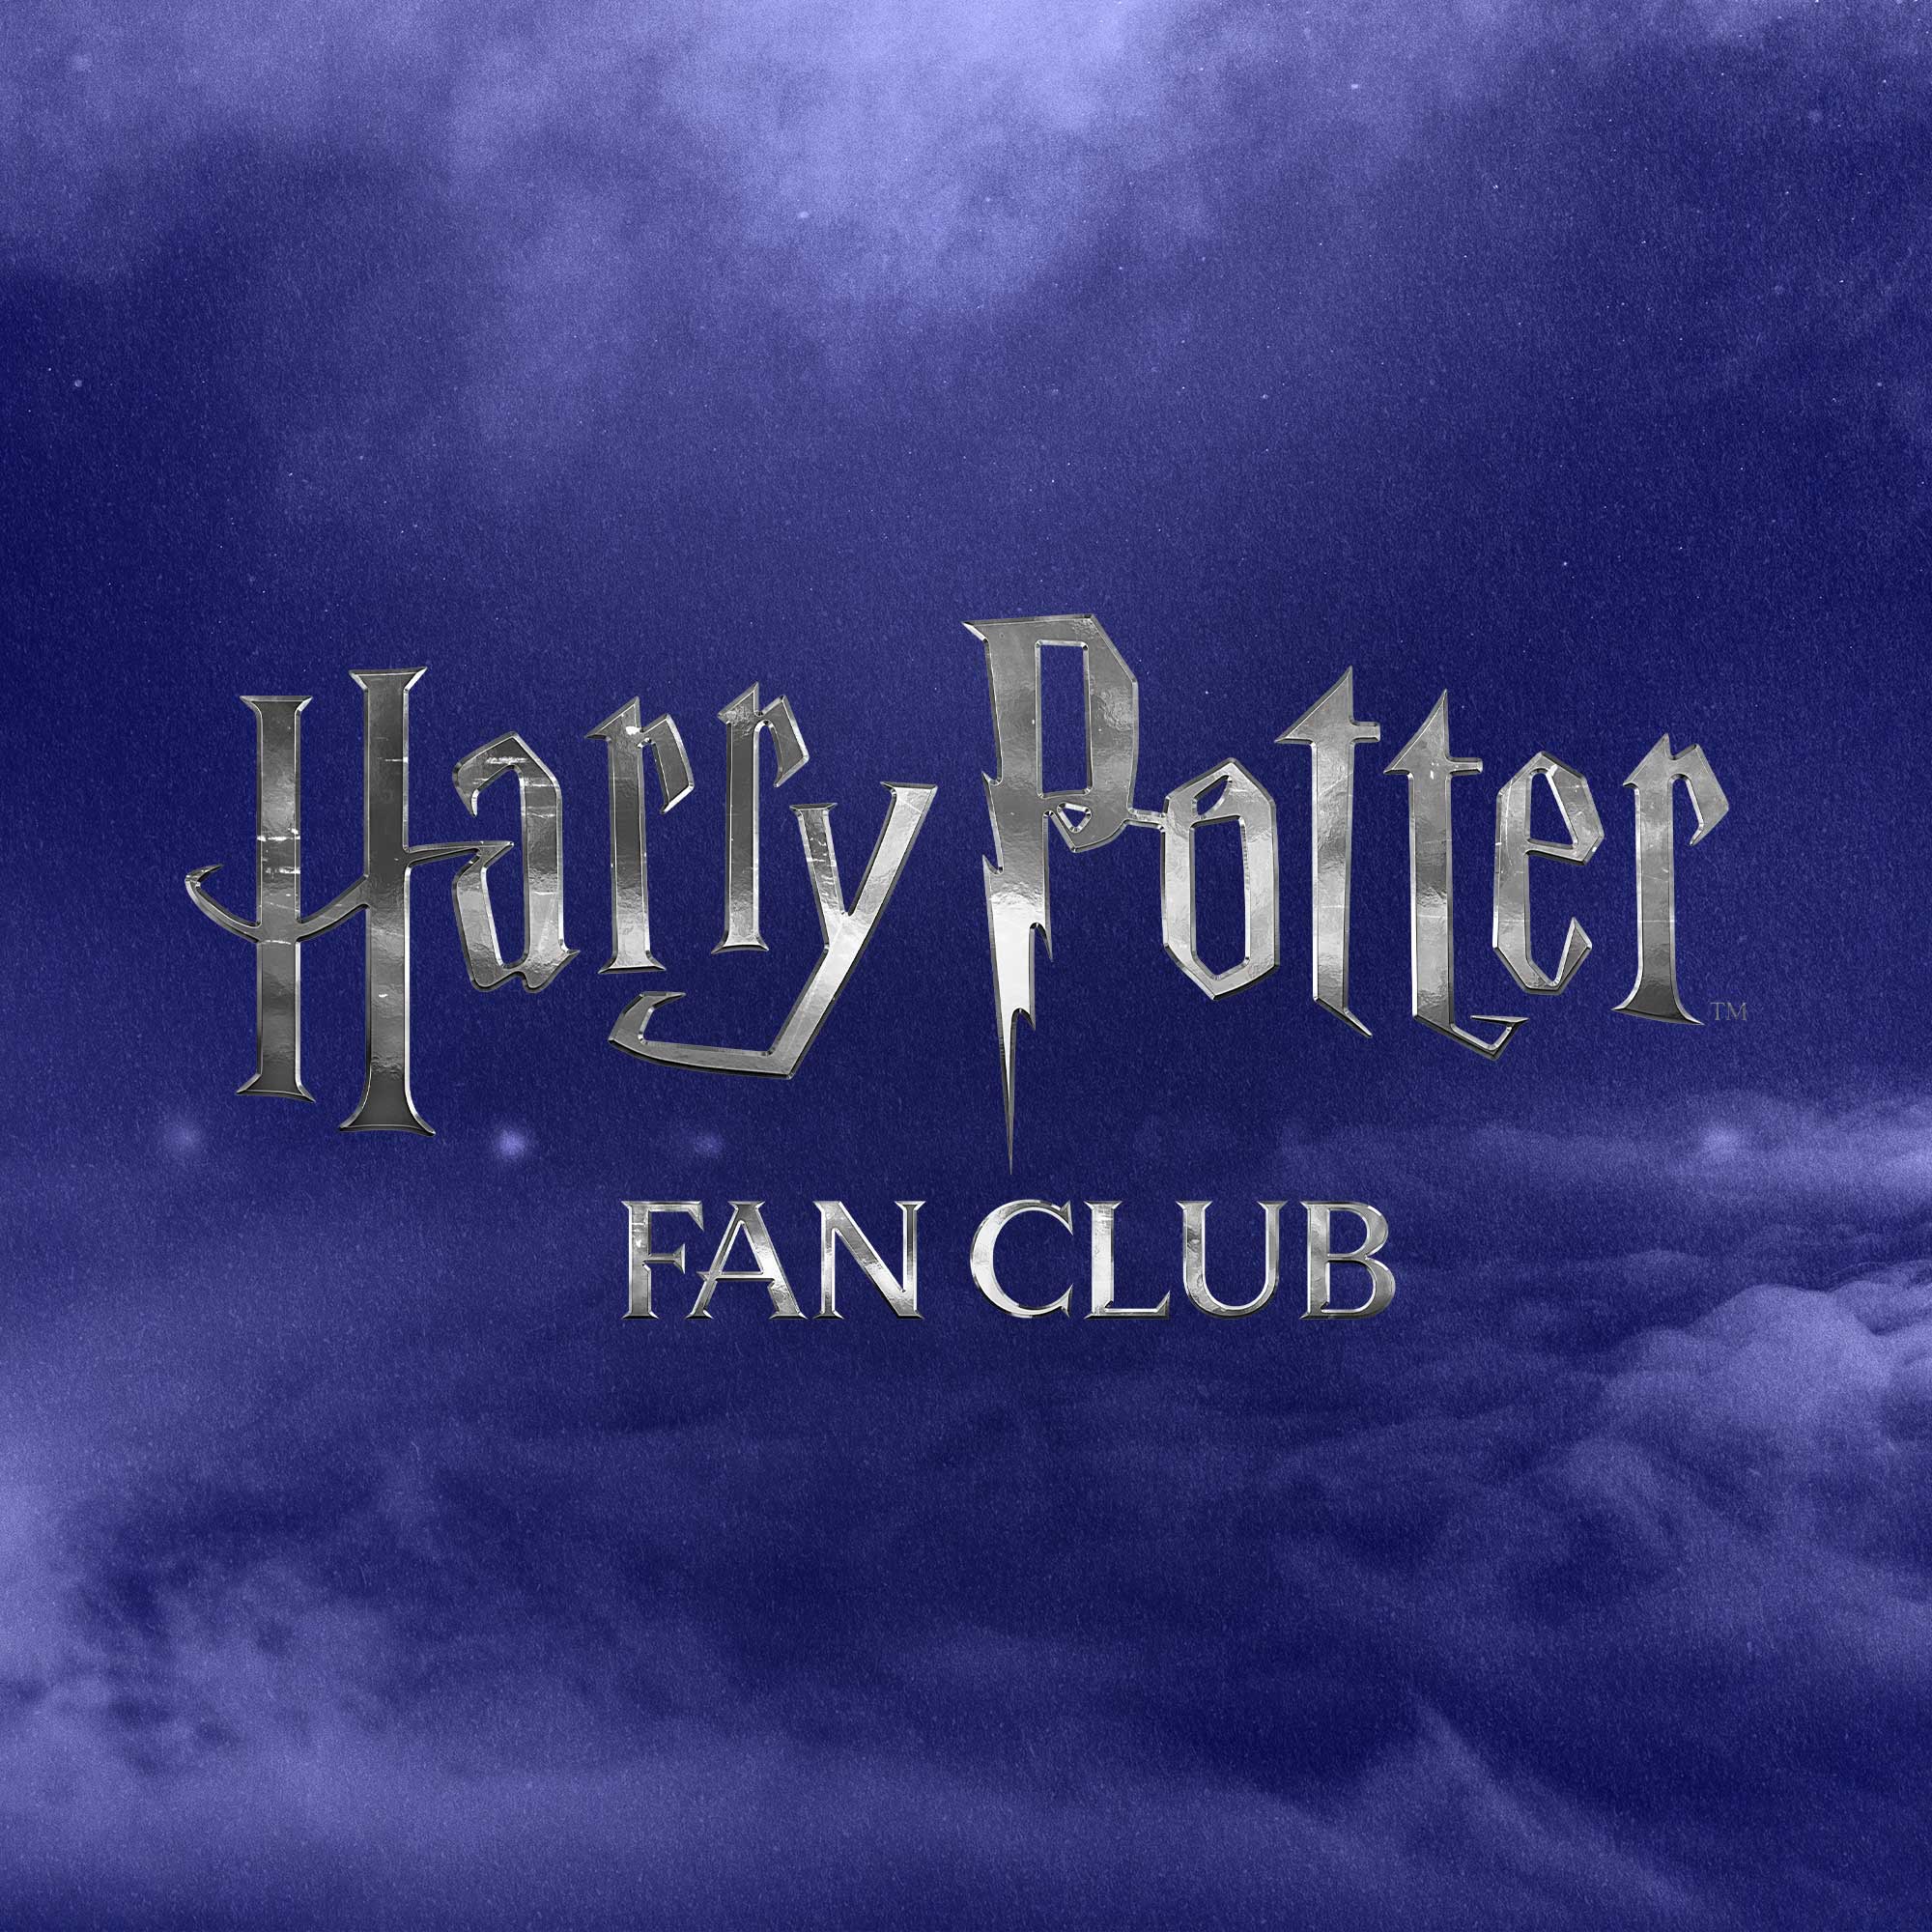 Harry potter fan club added a new - Harry potter fan club